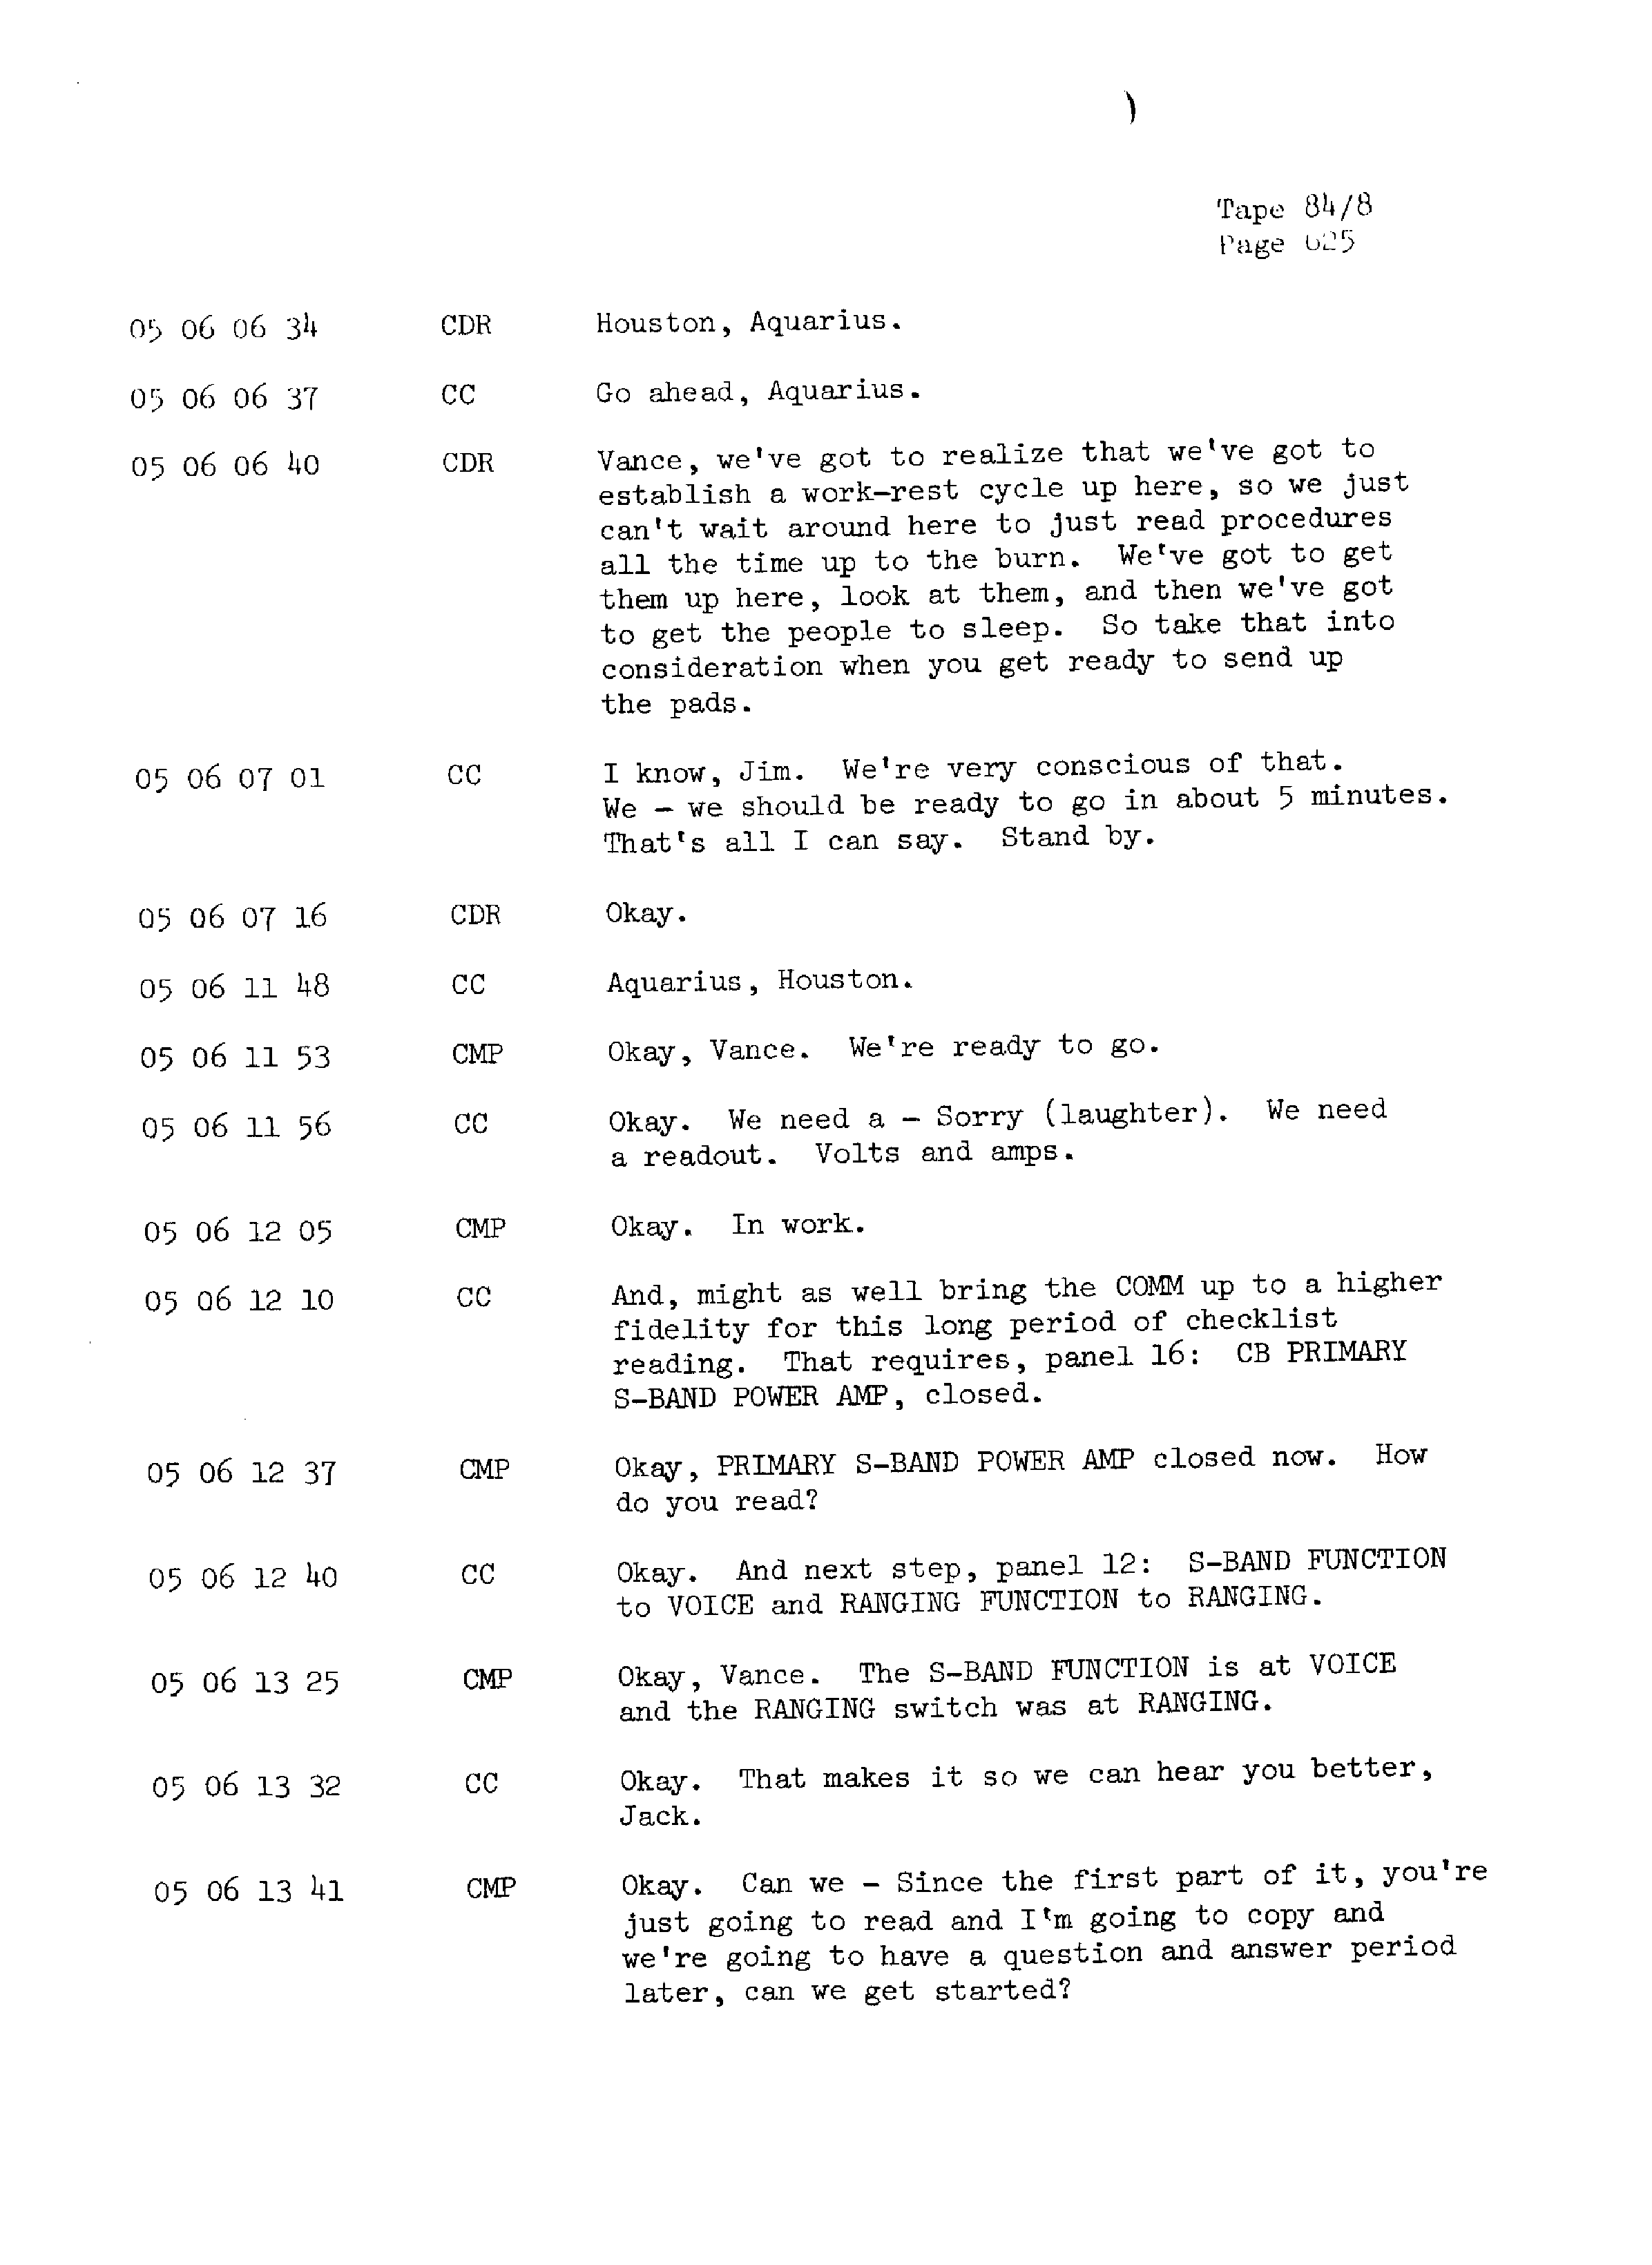 Page 632 of Apollo 13’s original transcript